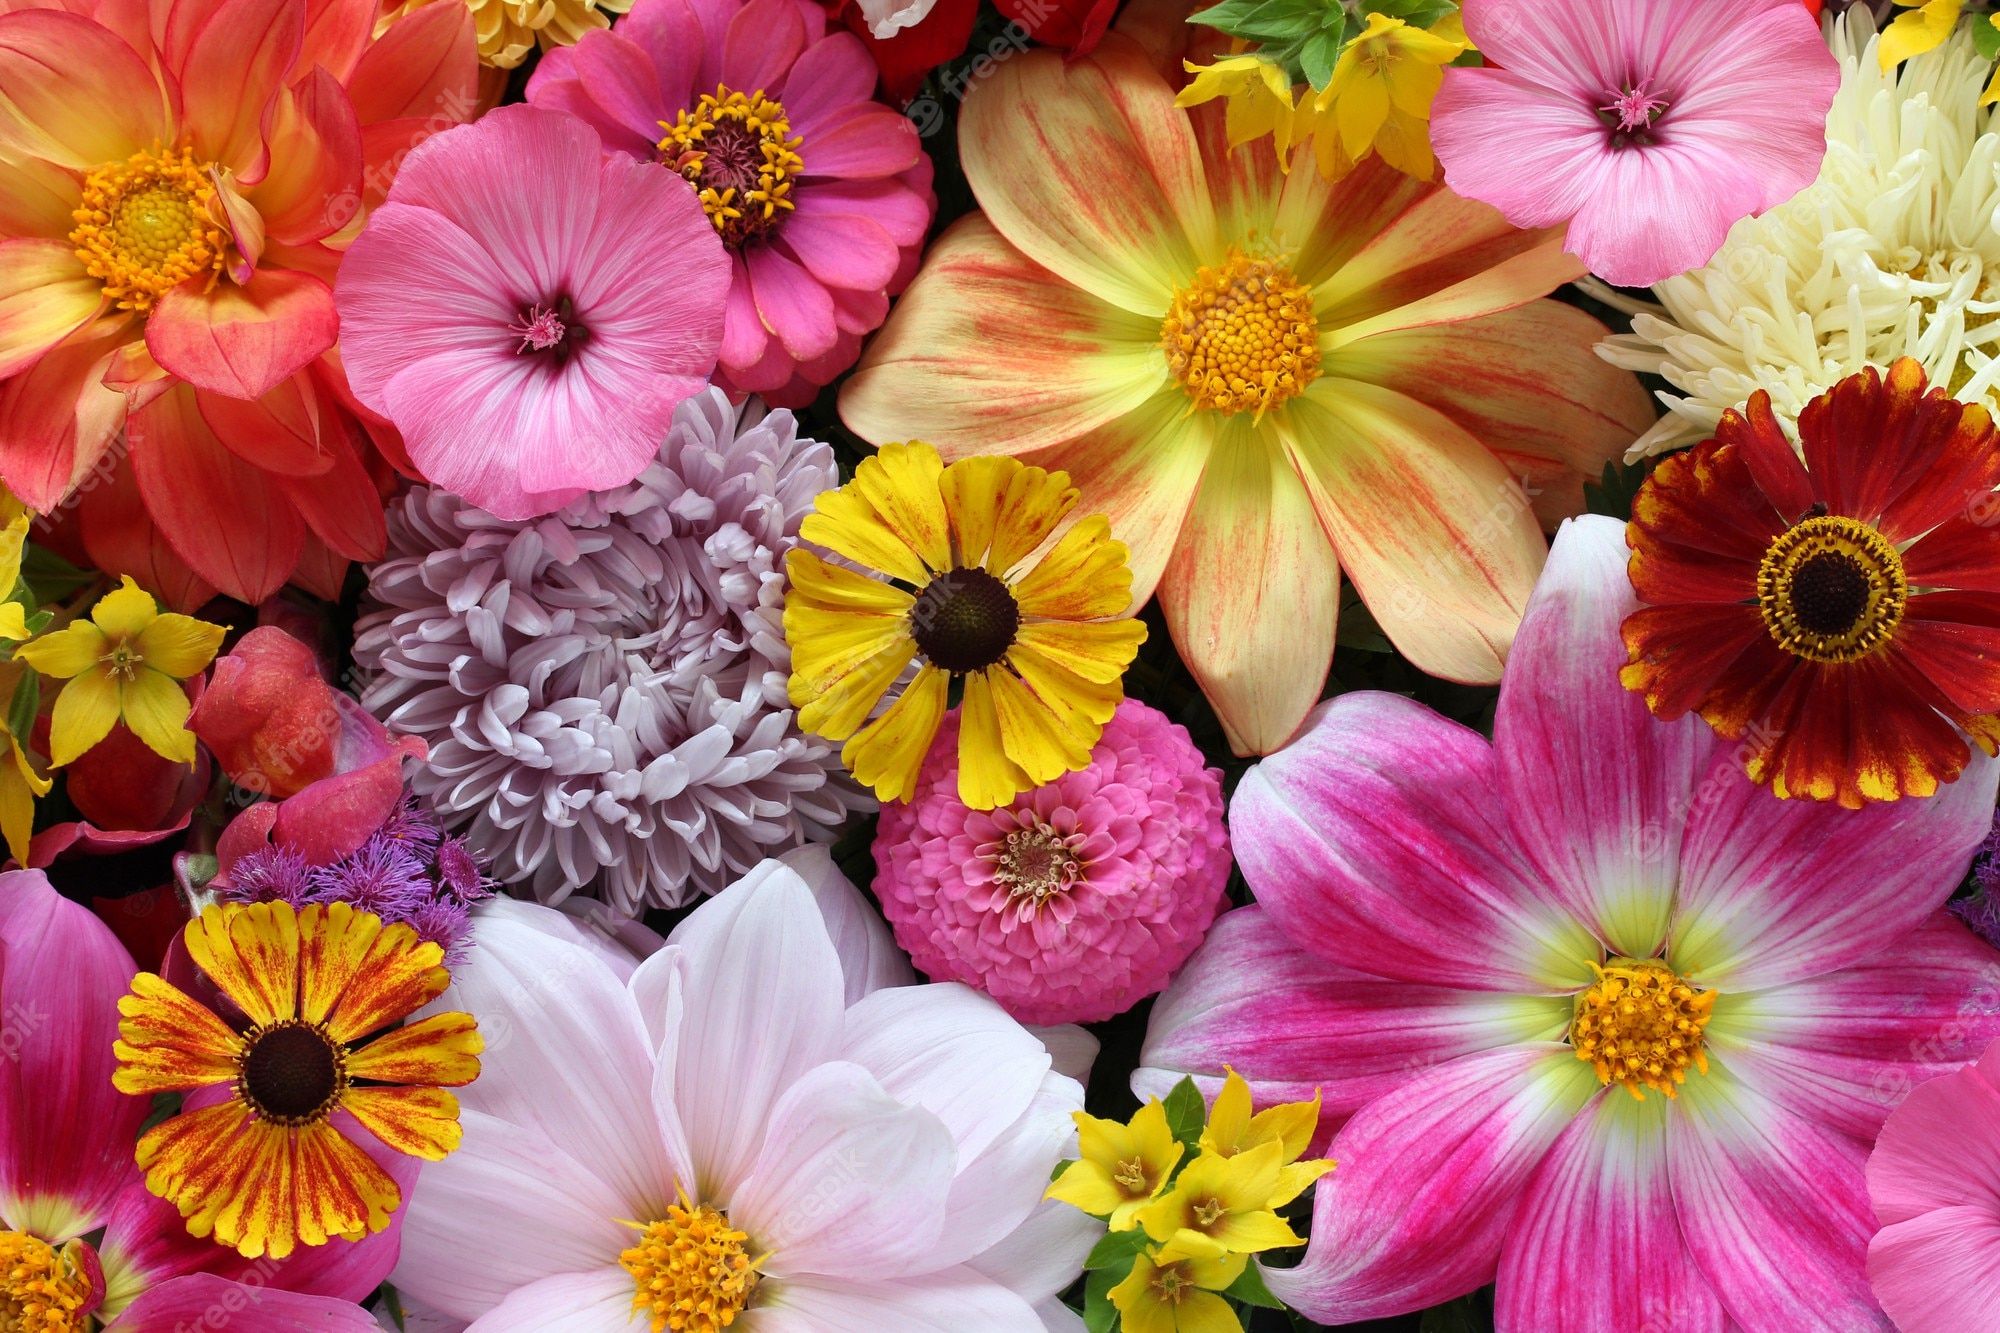  Blumen Hintergrundbild 2000x1333. Flower Hintergrund Bilder Download auf Freepik